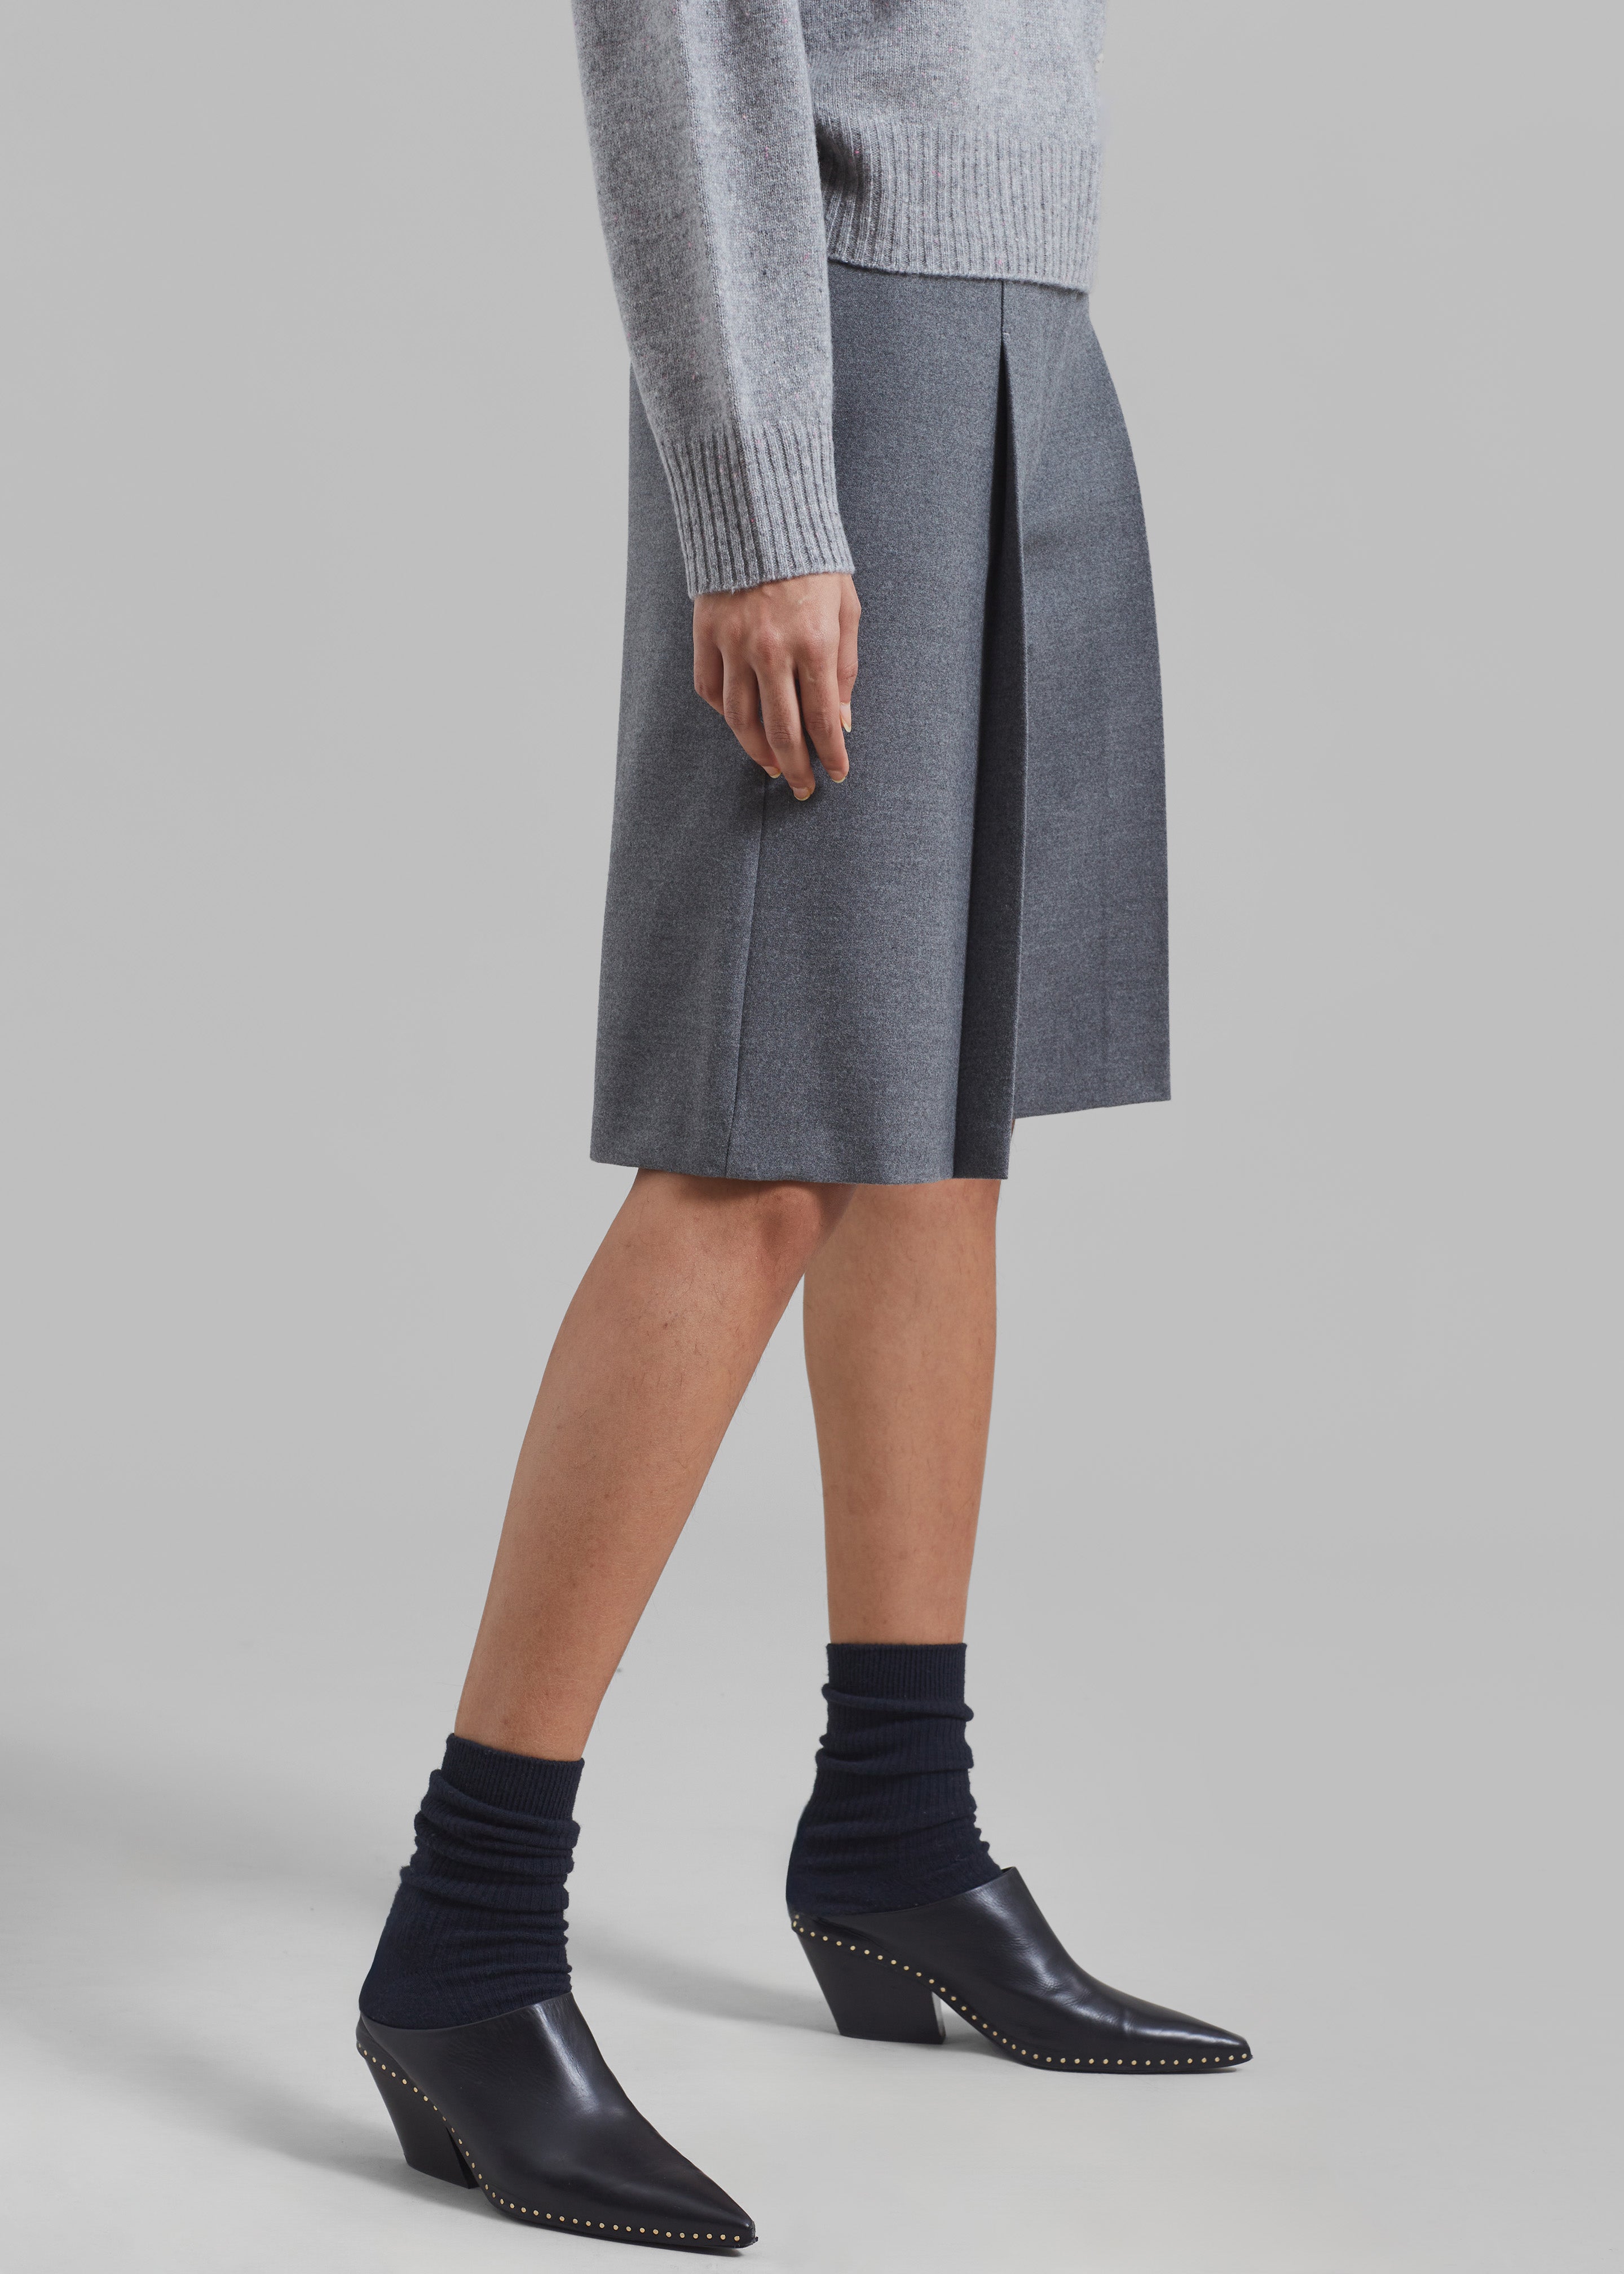 Austen Bermuda Shorts - Grey - 3